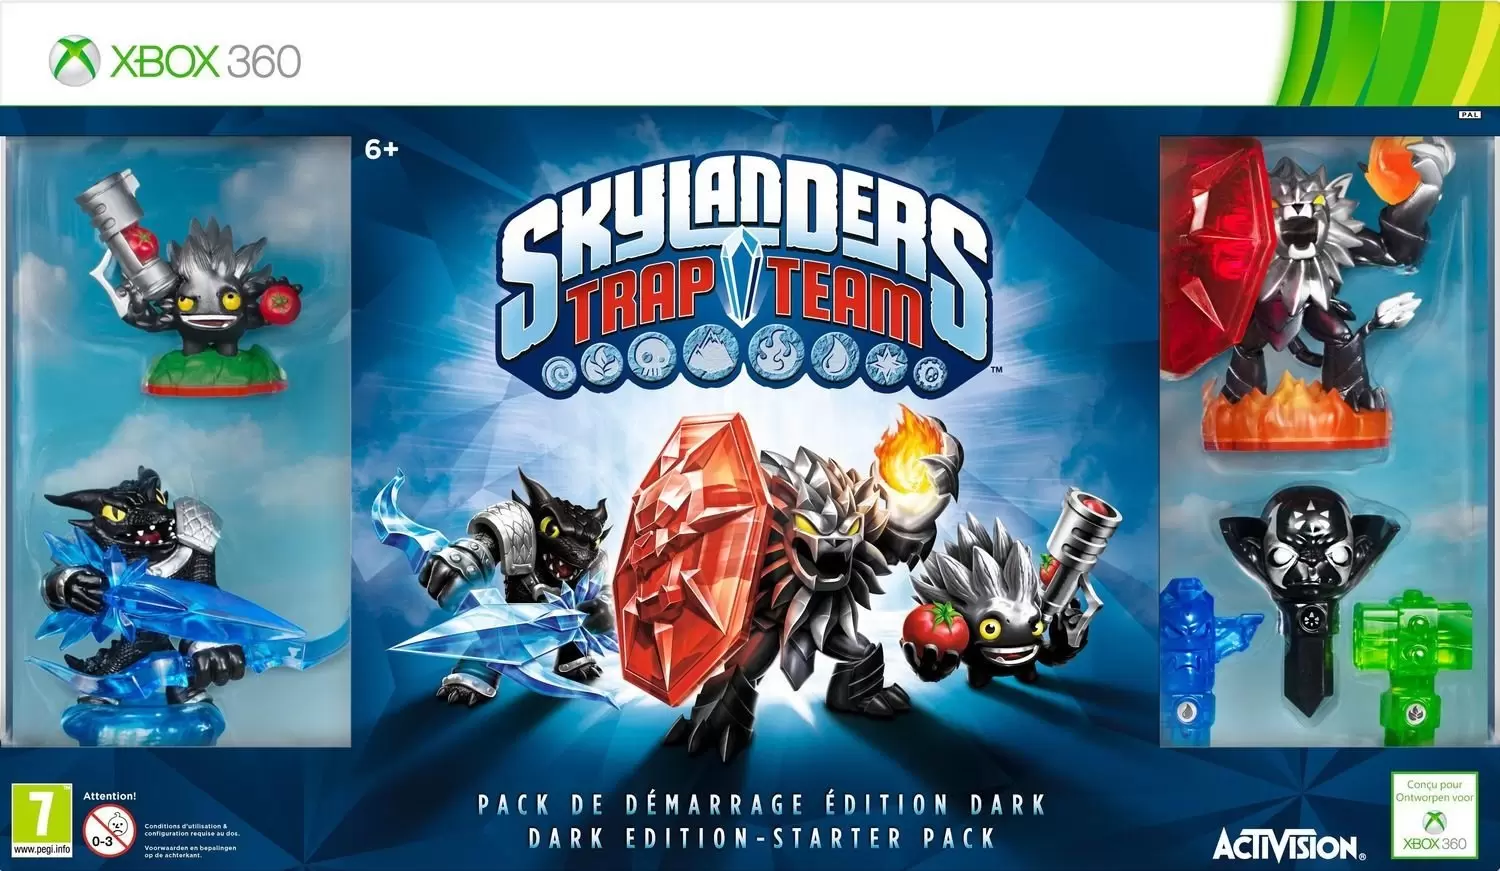 XBOX 360 Games - Skylanders Trap Team Dark Edition